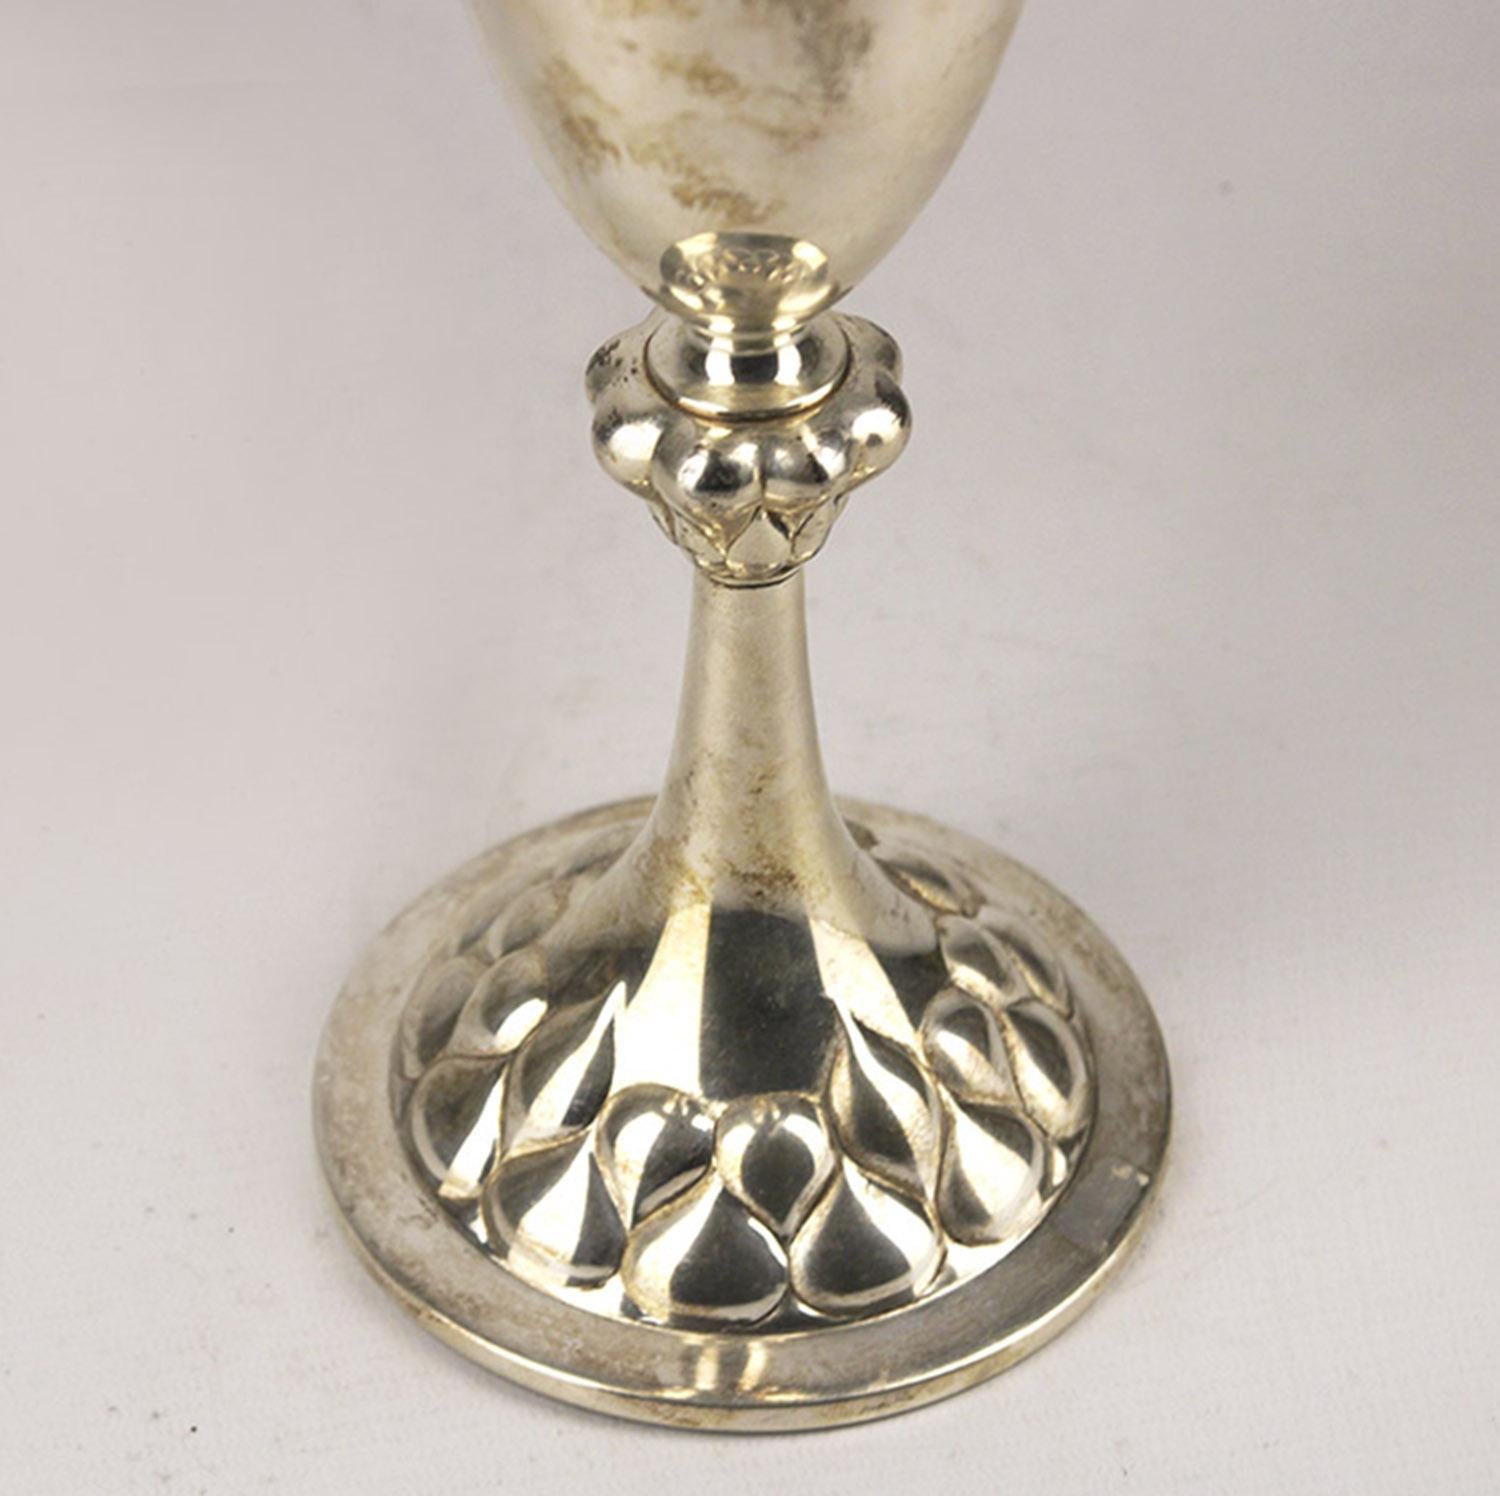 20th Century Jugendstil German Silver Plated Chalice-Shaped Presentation Trophy Vase by WMF For Sale